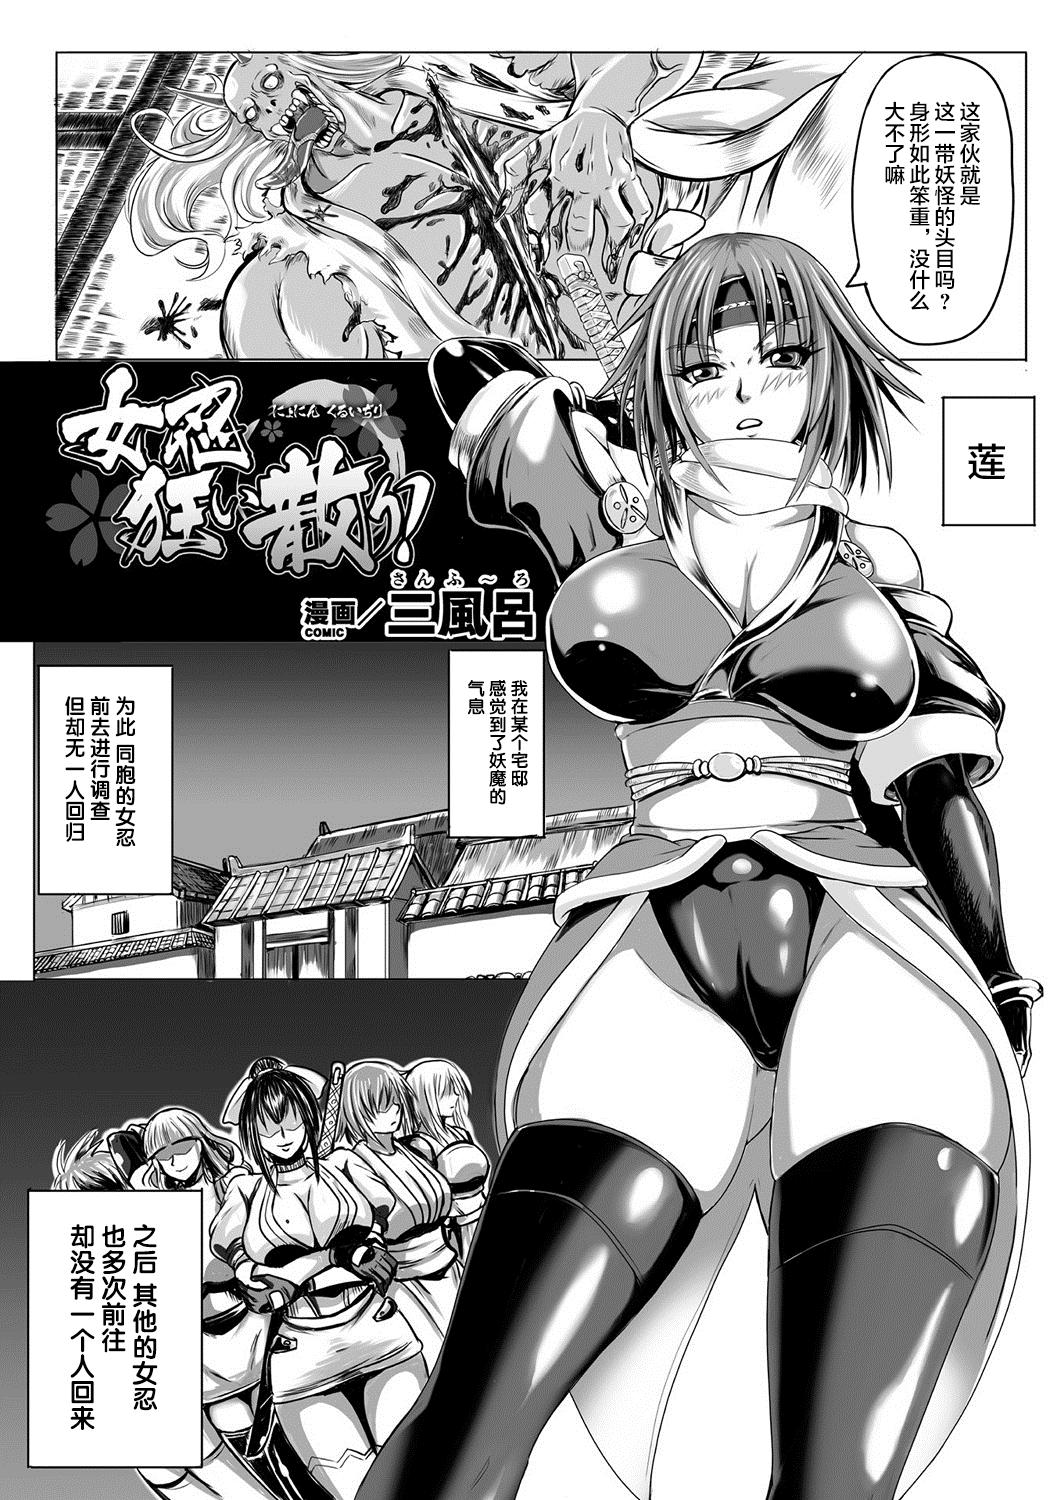 Bessatsu Comic Unreal Ningen Bokujou Hen Vol. 10 46